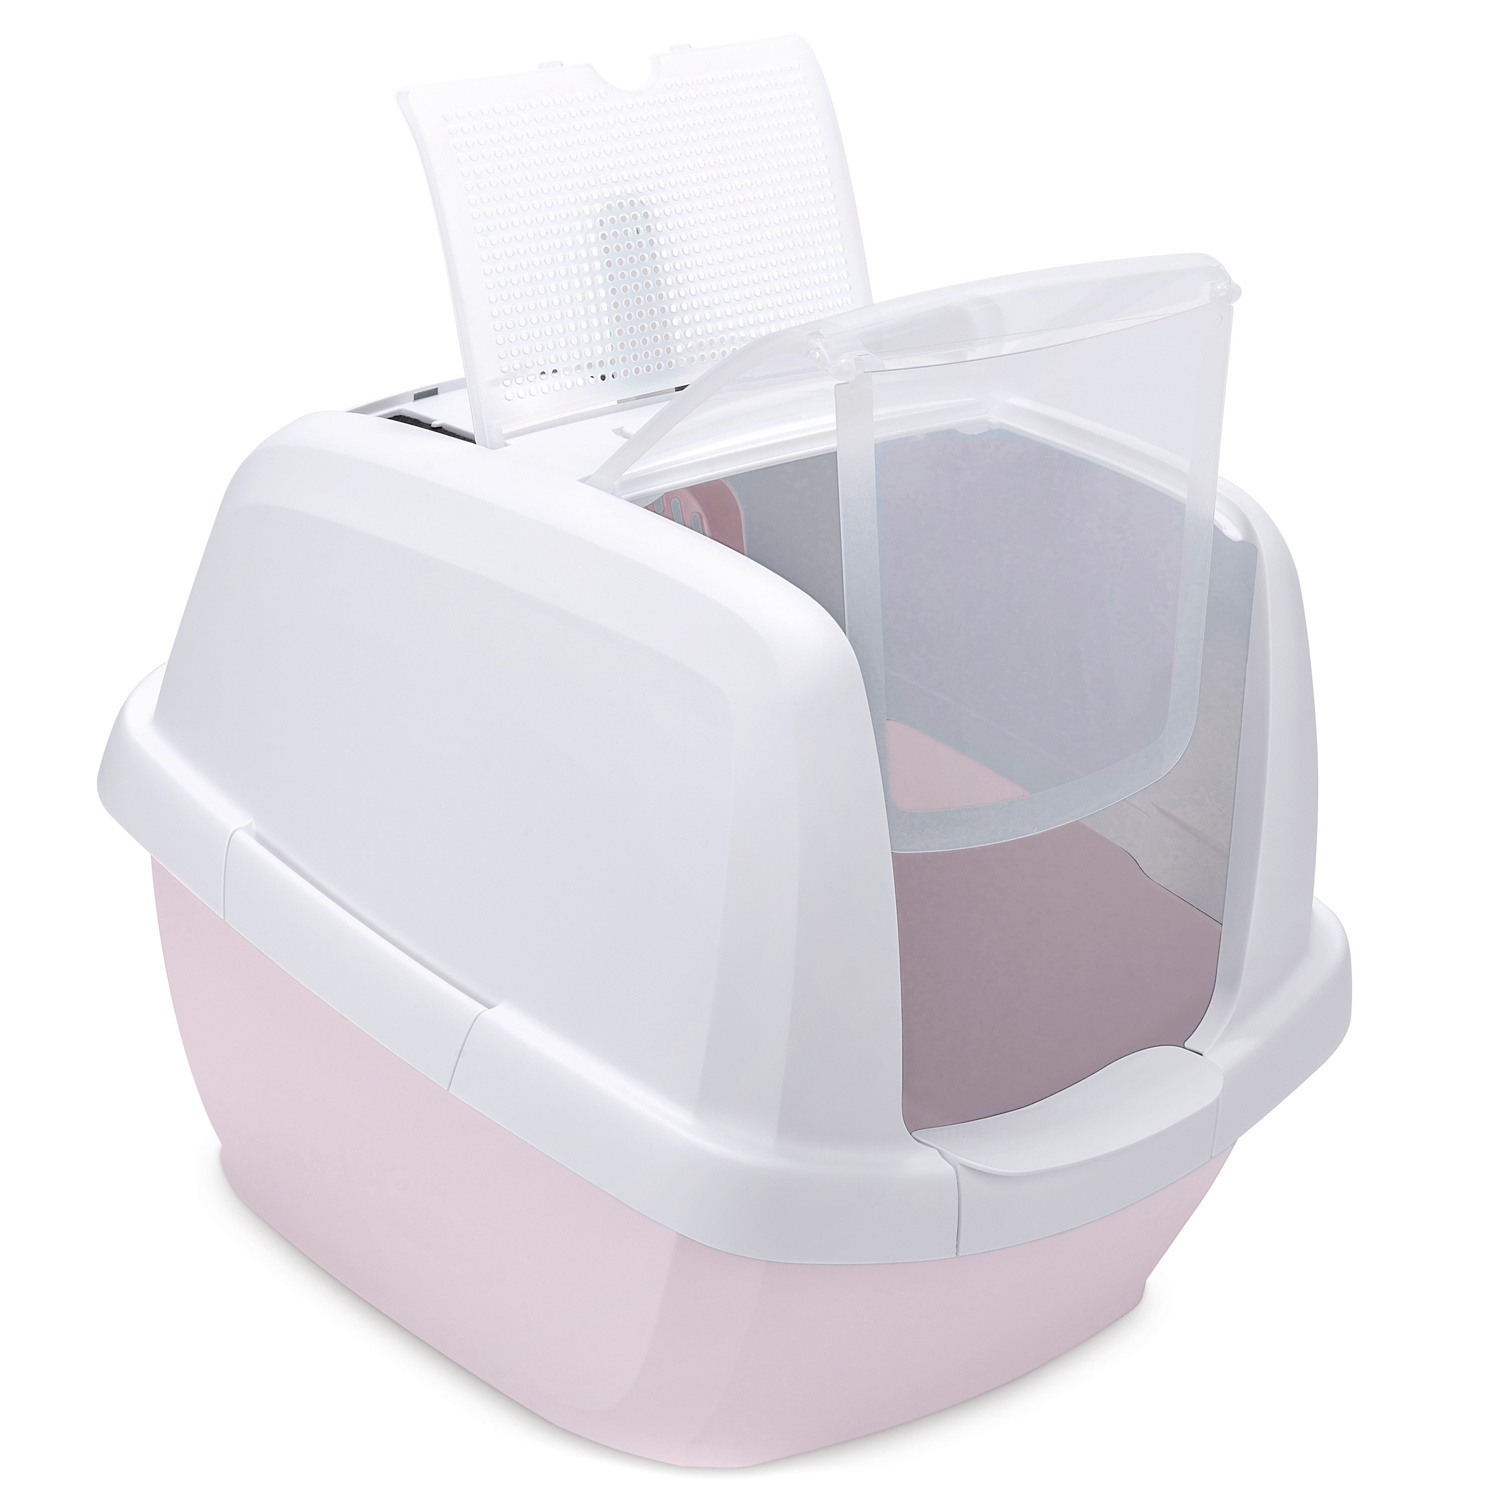 IMAC IMAC био-туалет для кошек , белый/нежно-розовый (2,85 кг)